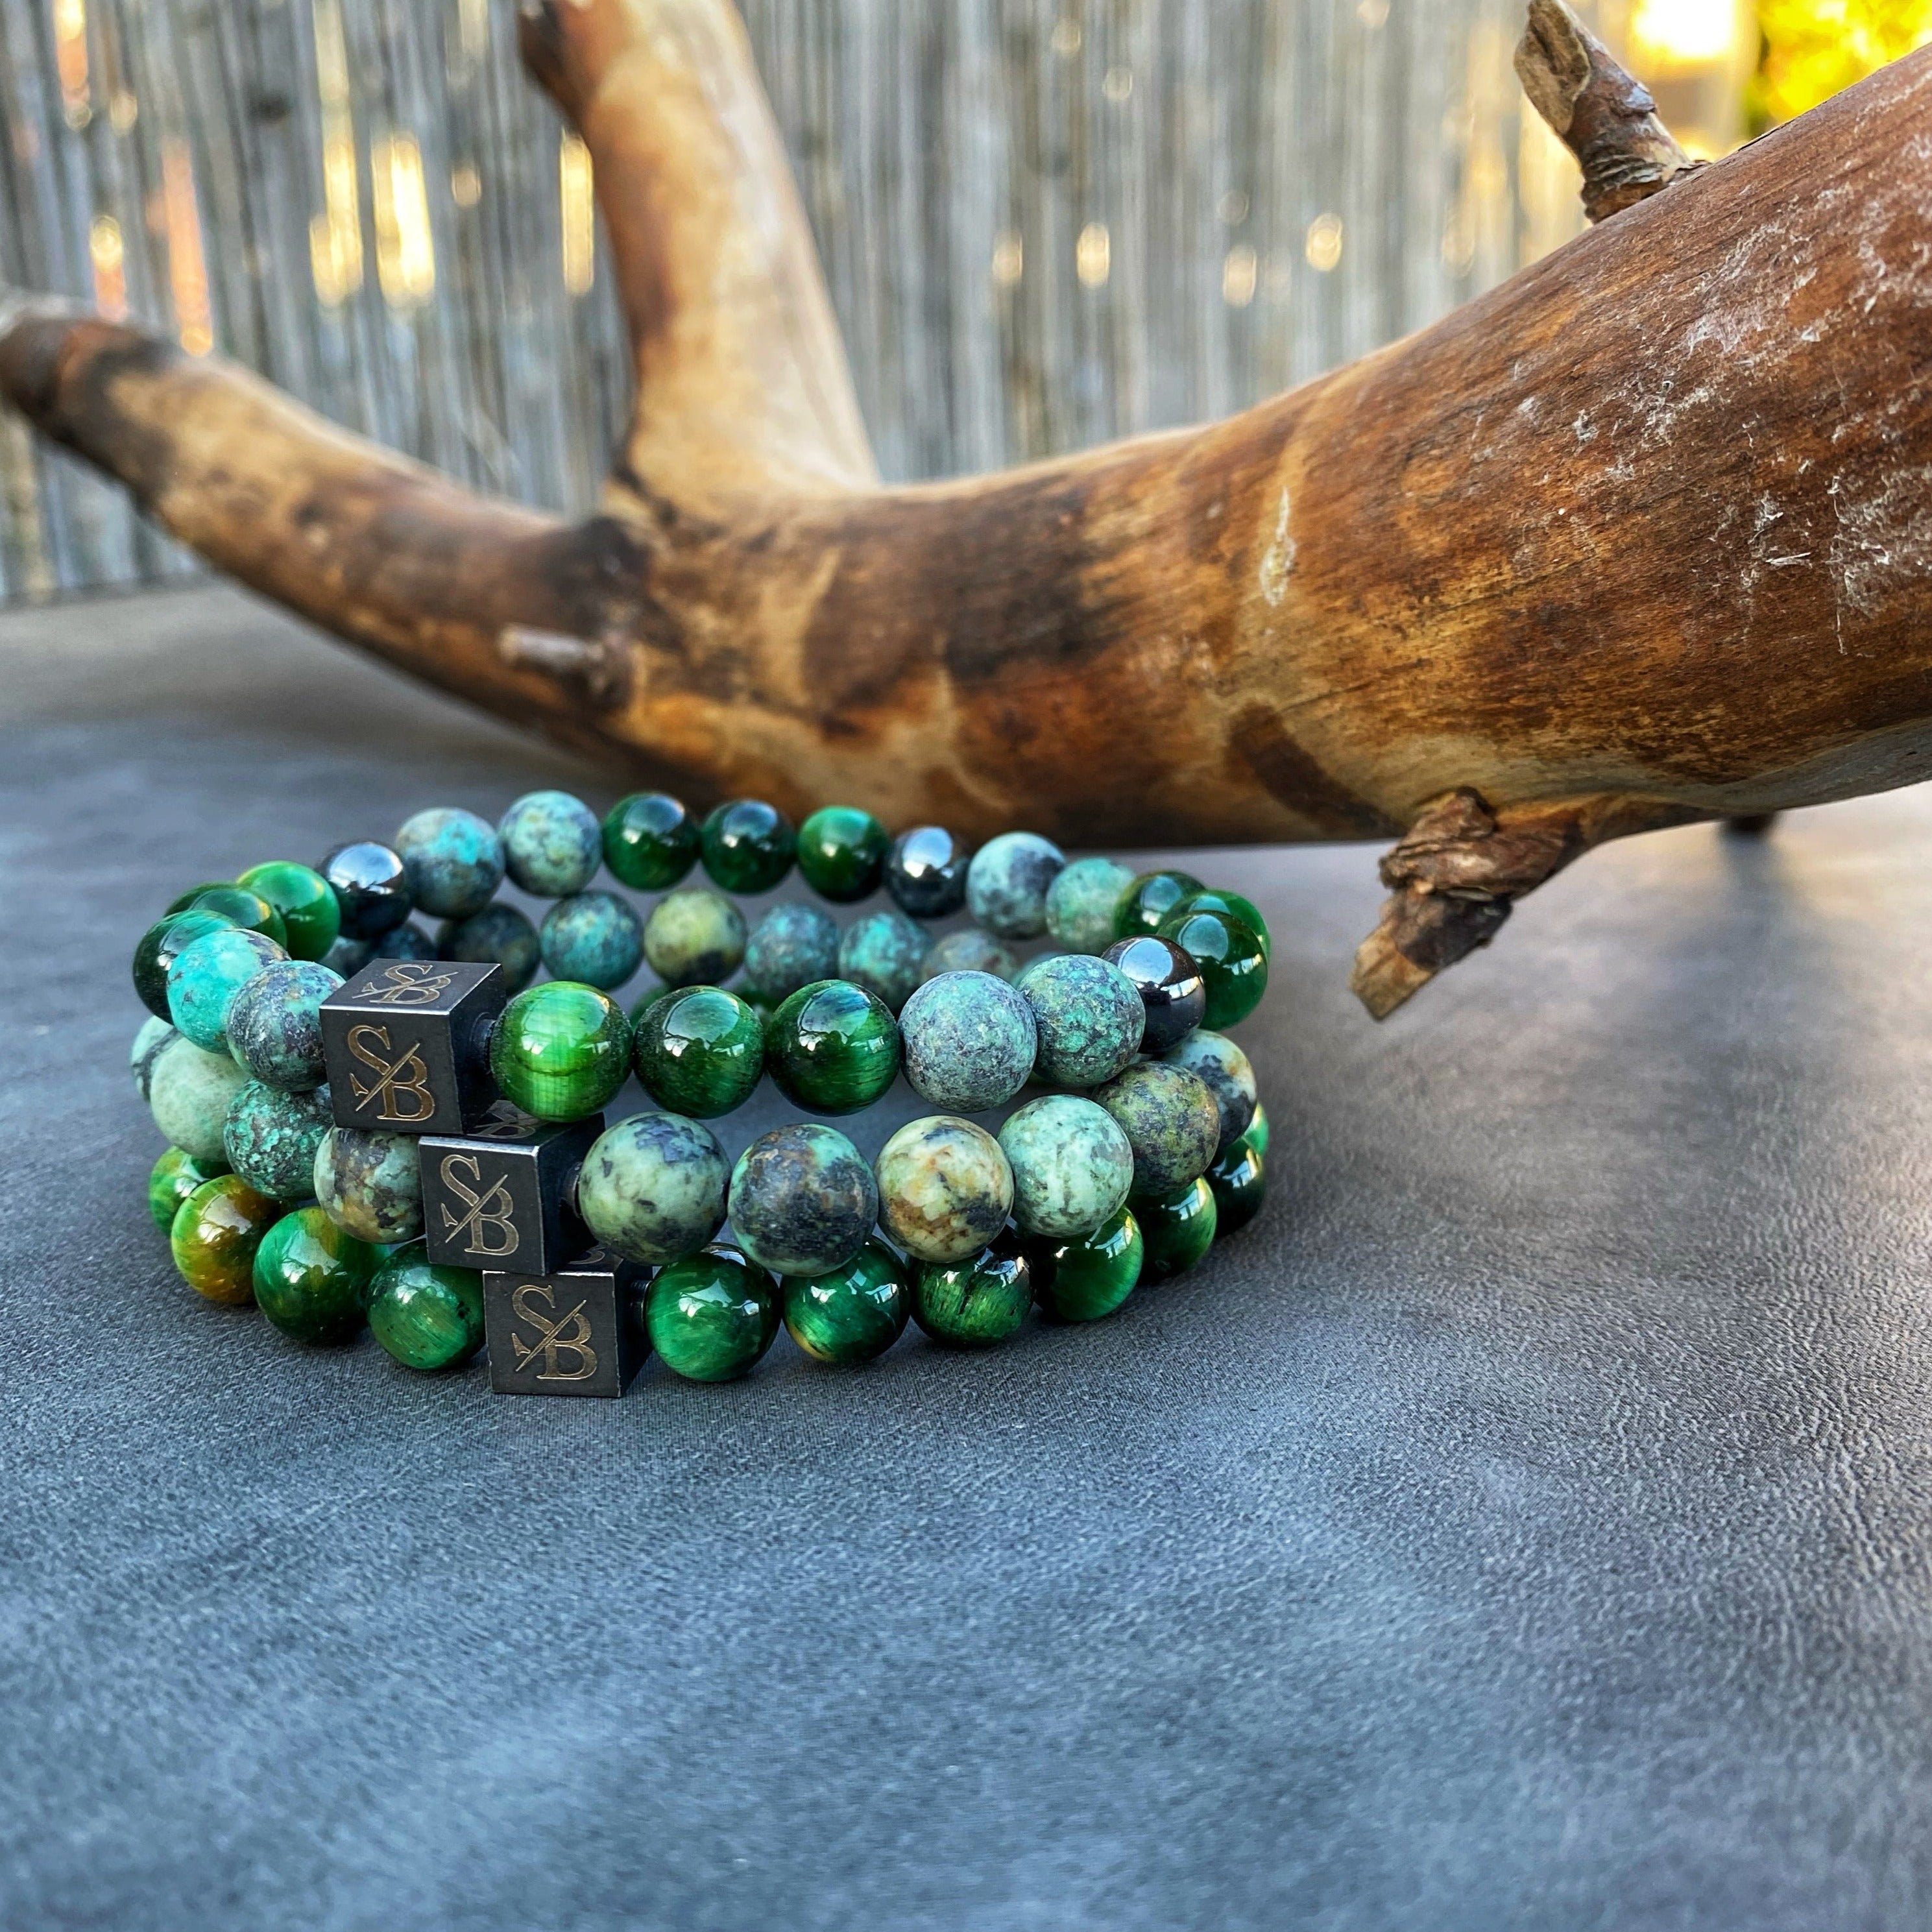 Een Stoney Bracelets armband met groene en zwarte Grass Set (8 mm) kralen bovenop een boomstronk.